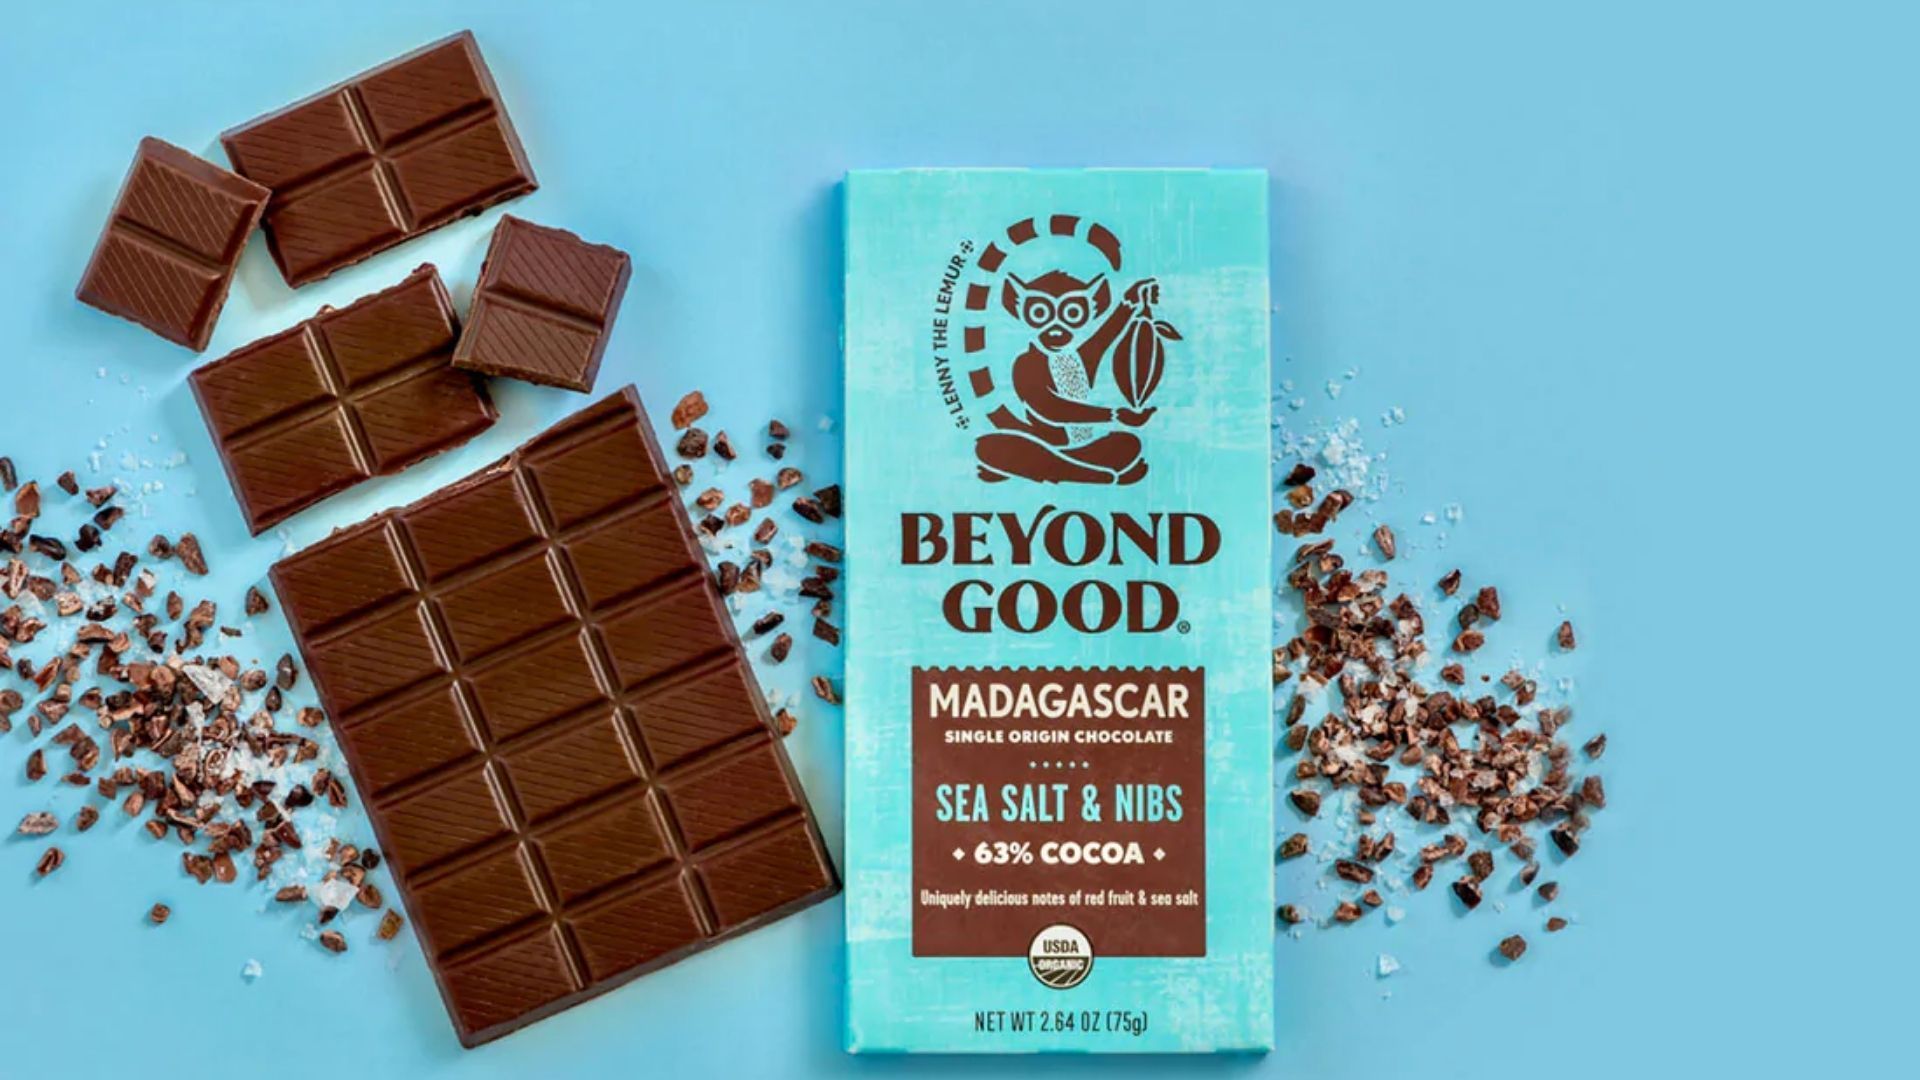 Beyond Good chocolate brand